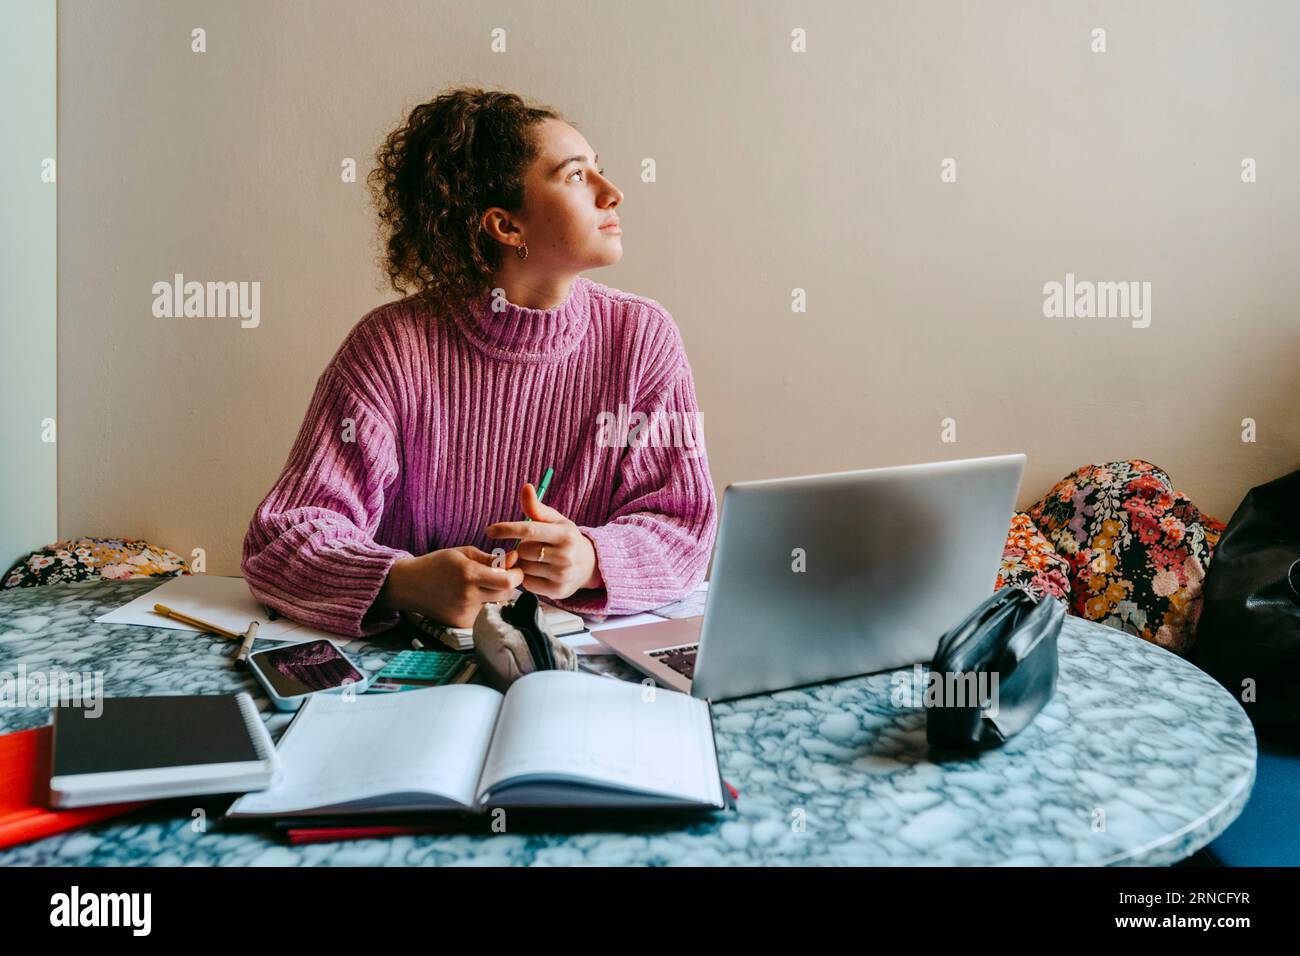 Nachdenkliche junge Frau, die wegschaut, während sie mit Laptop und Büchern am Tisch sitzt Stockfoto